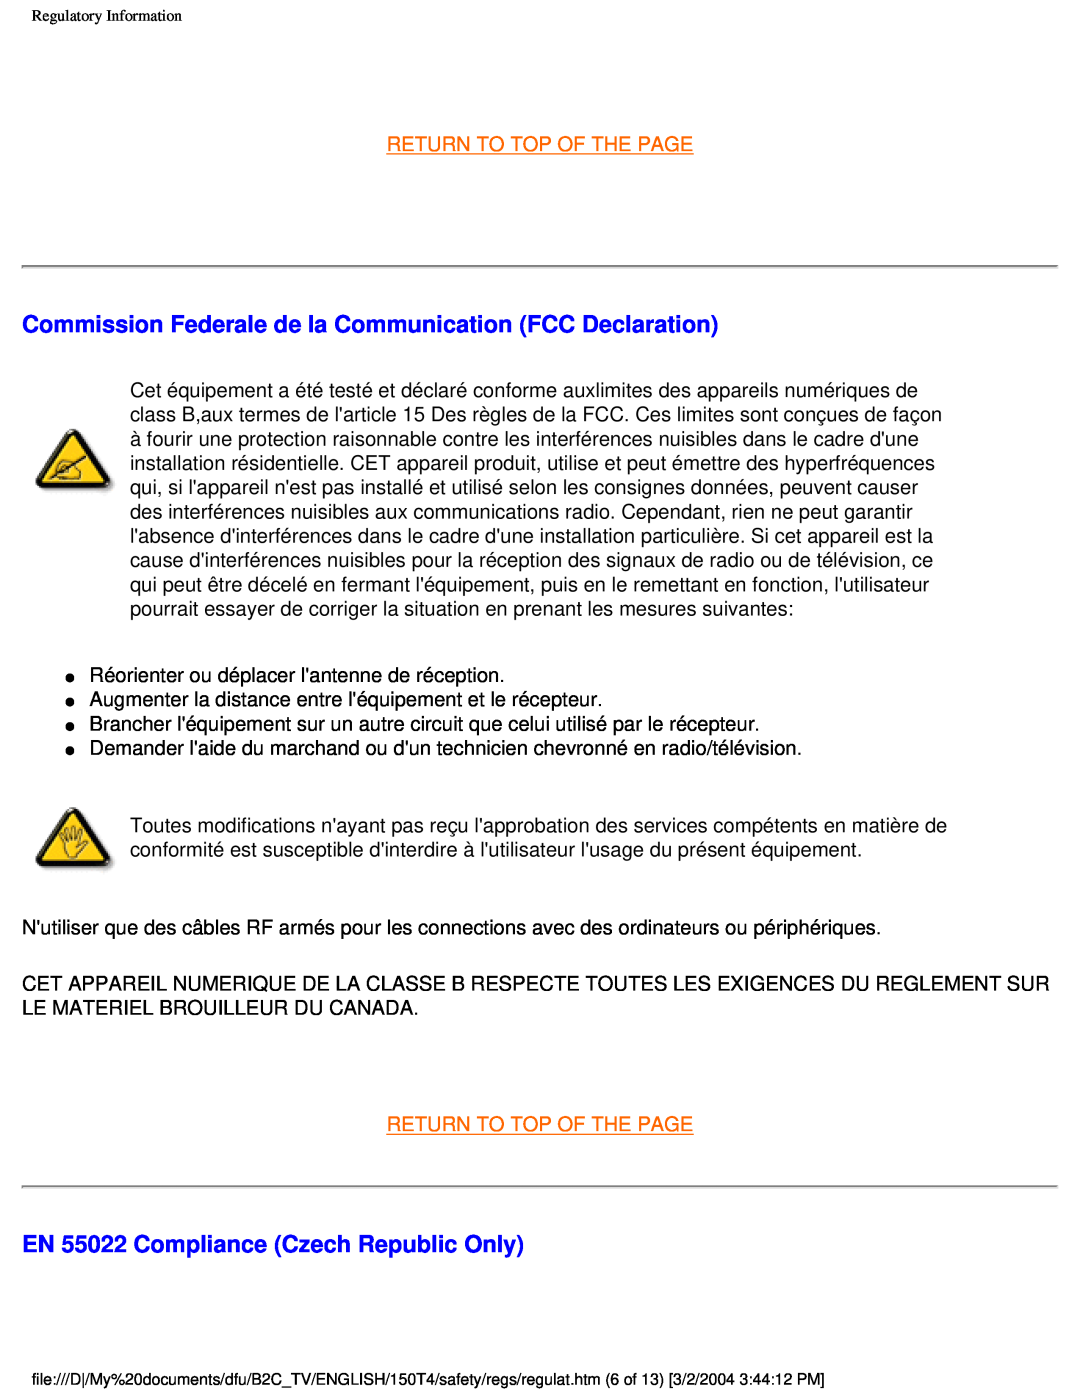 Philips 150T4 manual Commission Federale de la Communication FCC Declaration, EN 55022 Compliance Czech Republic Only 